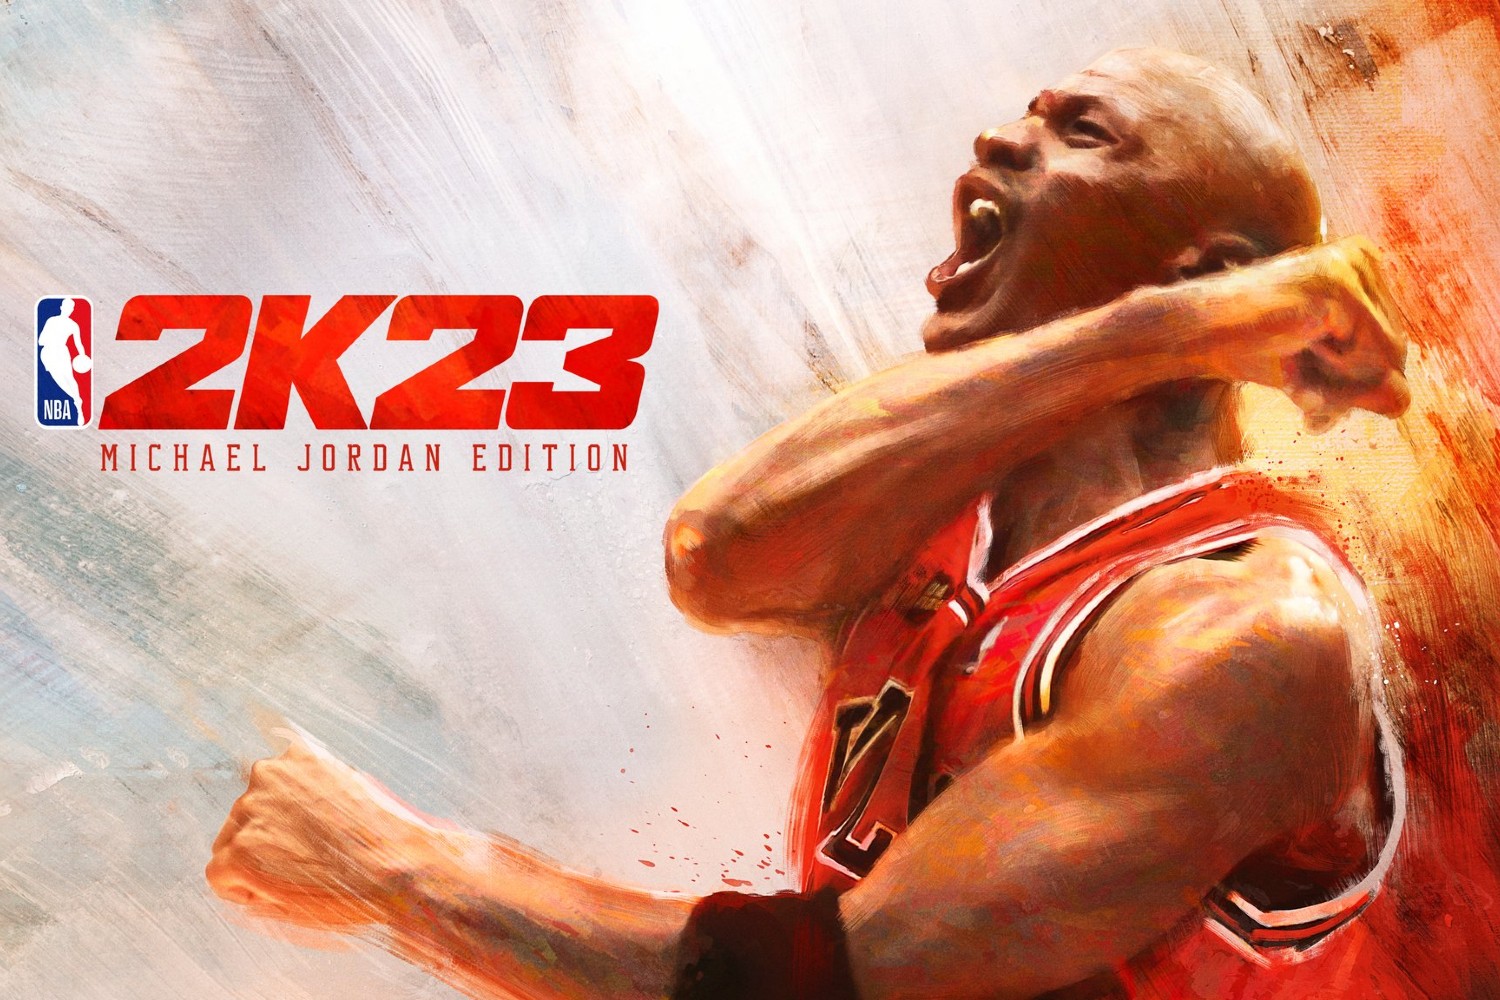 Michael Jordan crowned cover athlete for NBA 2K23